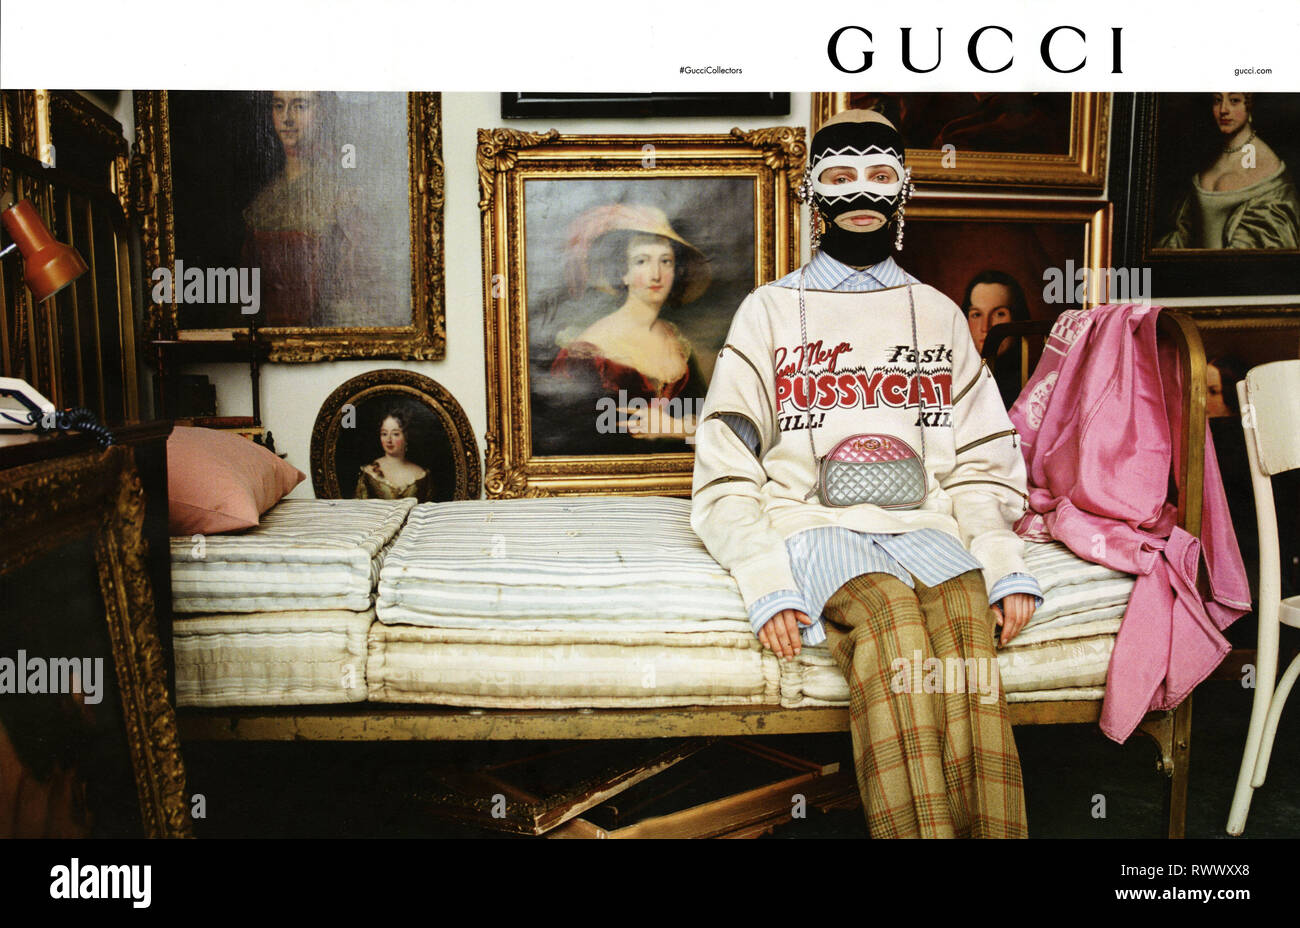 2010s UK Gucci Magazine Advert Stock Photo